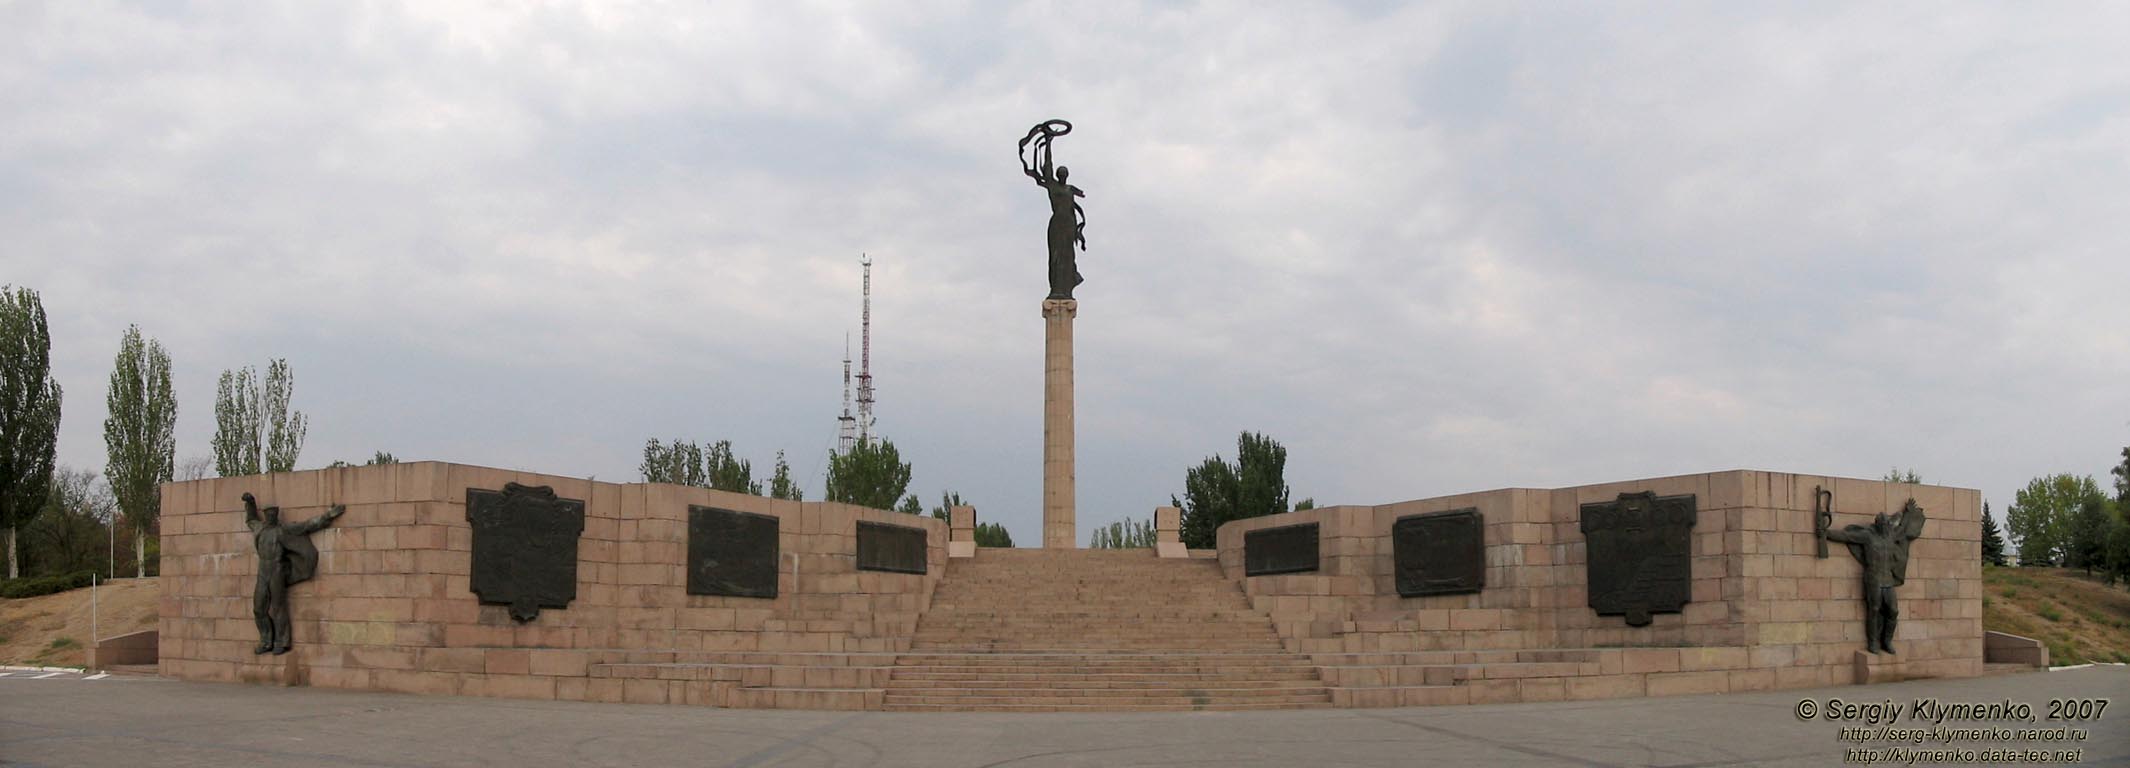 Херсон. Фото. Могила Неизвестного солдата (парк Славы).